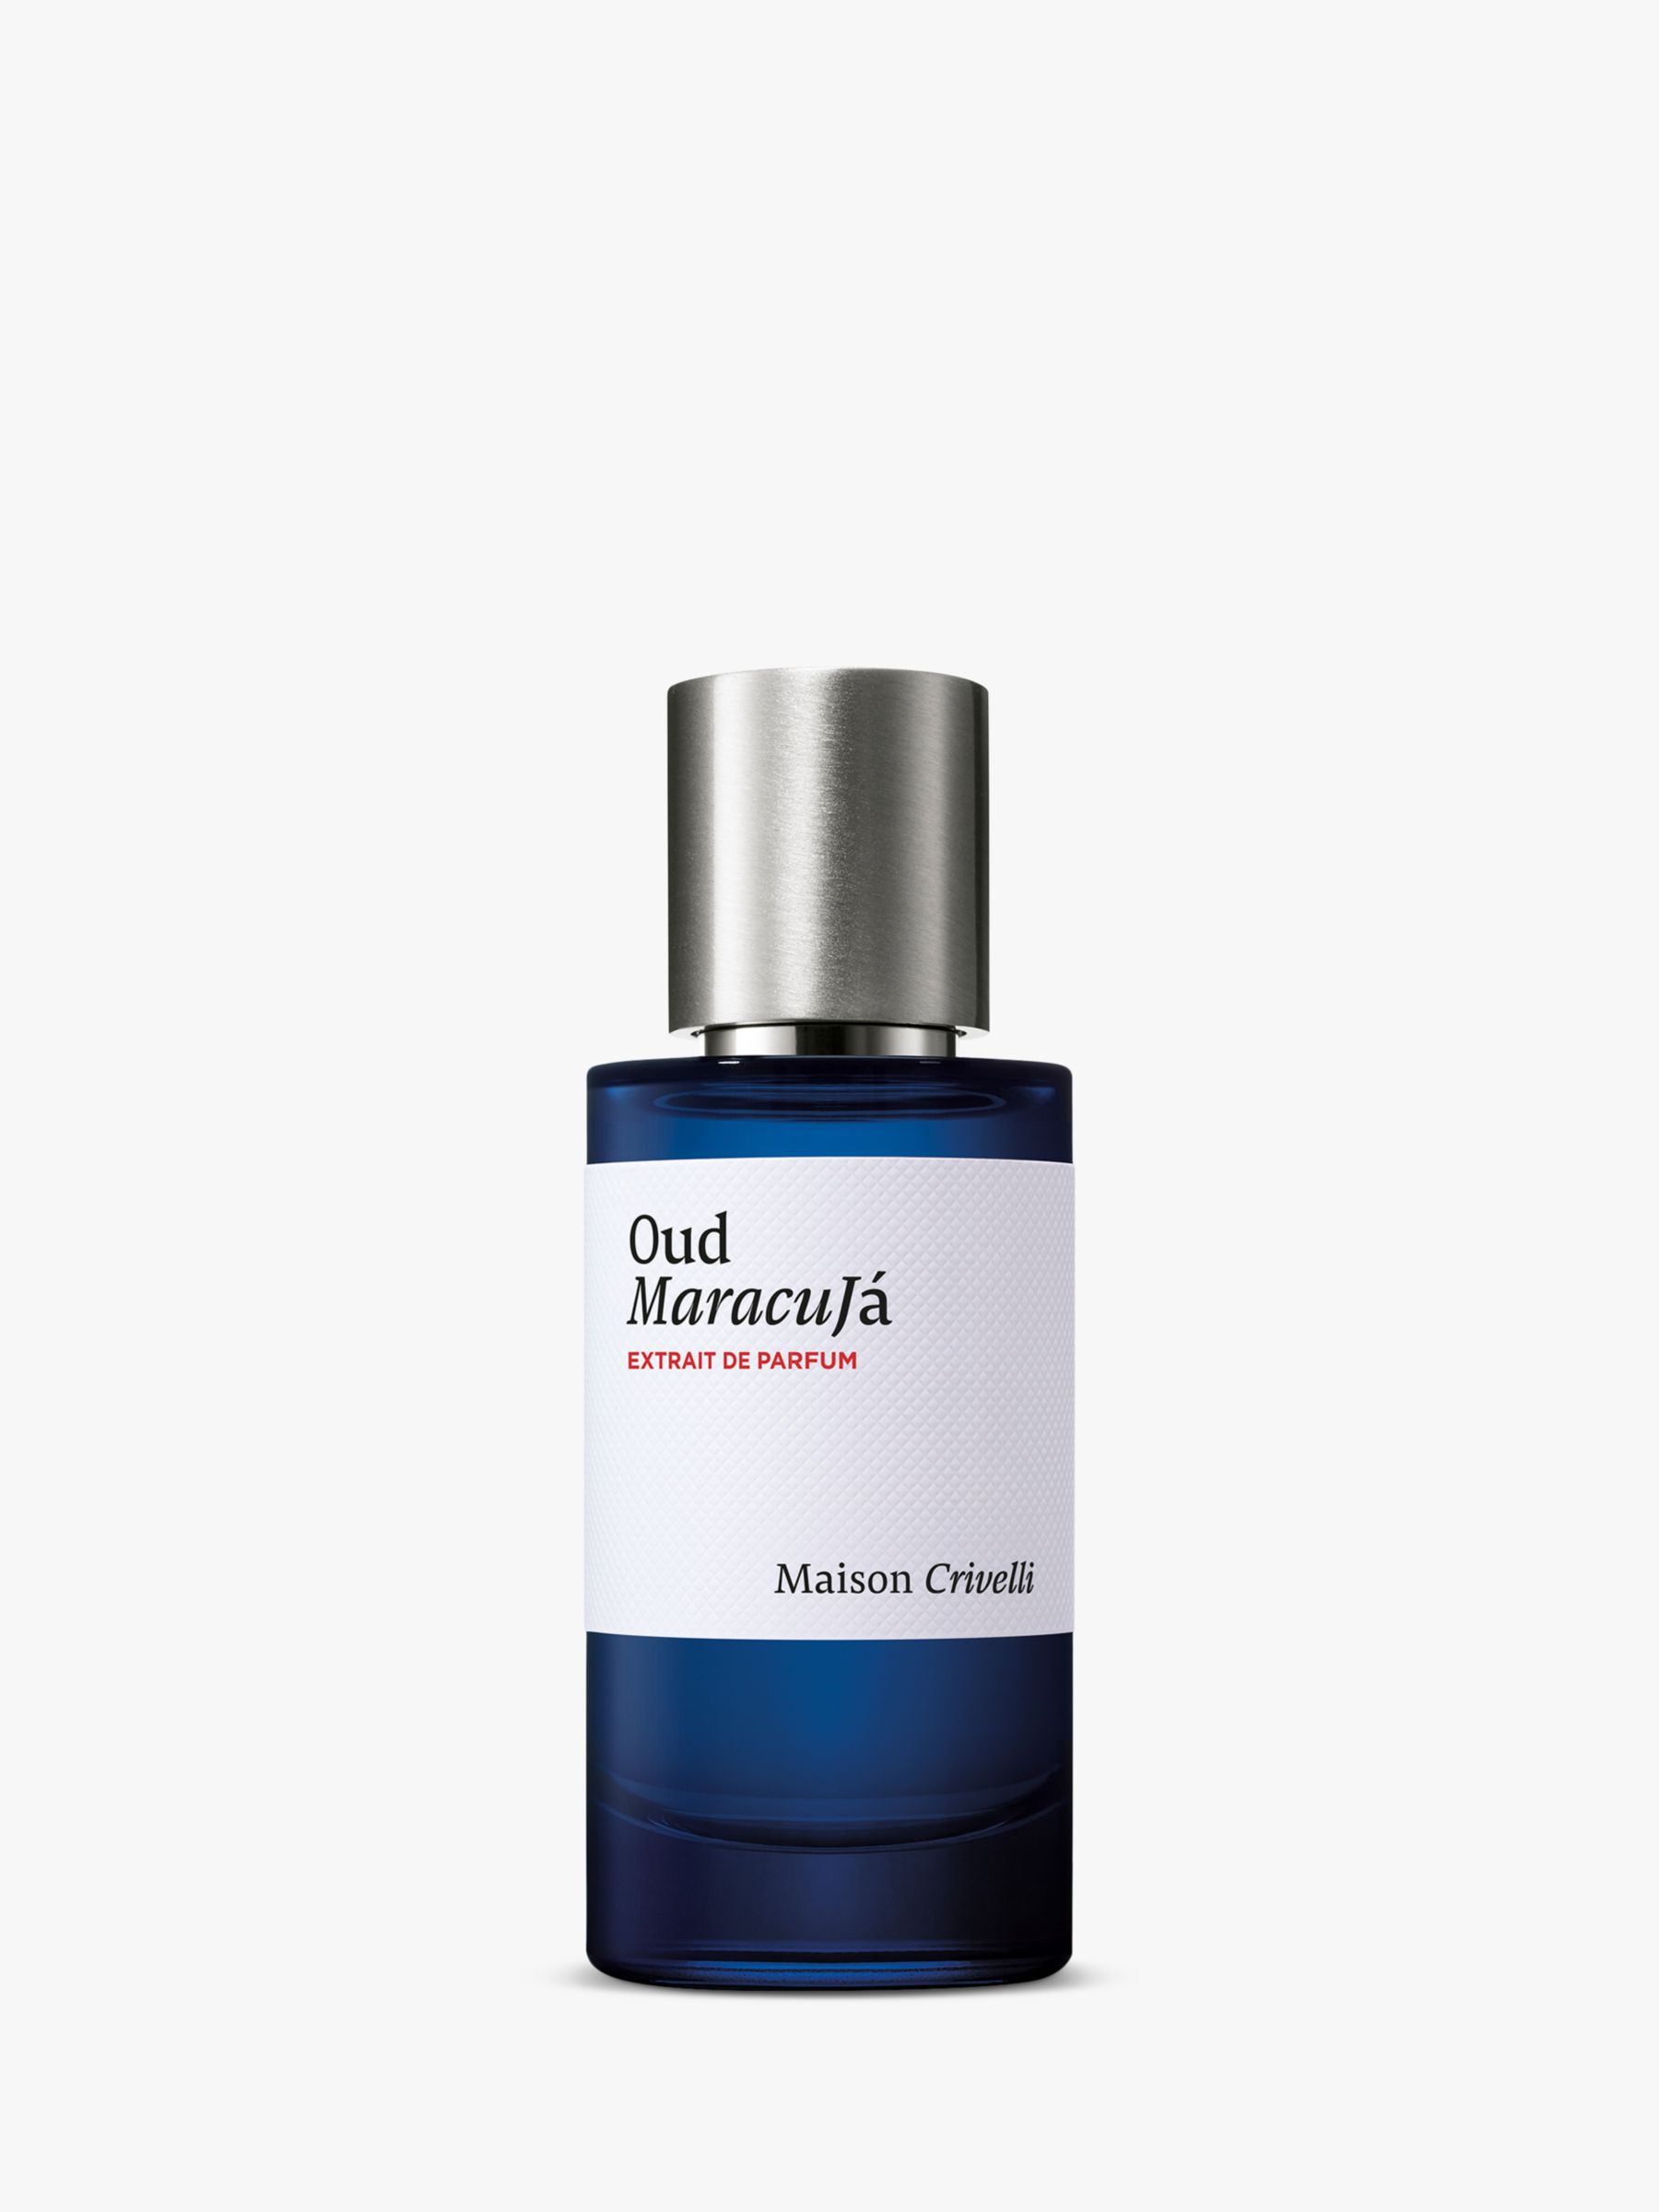 Maison Crivelli Oud Maracuja Extrait de Parfum, 50ml 1